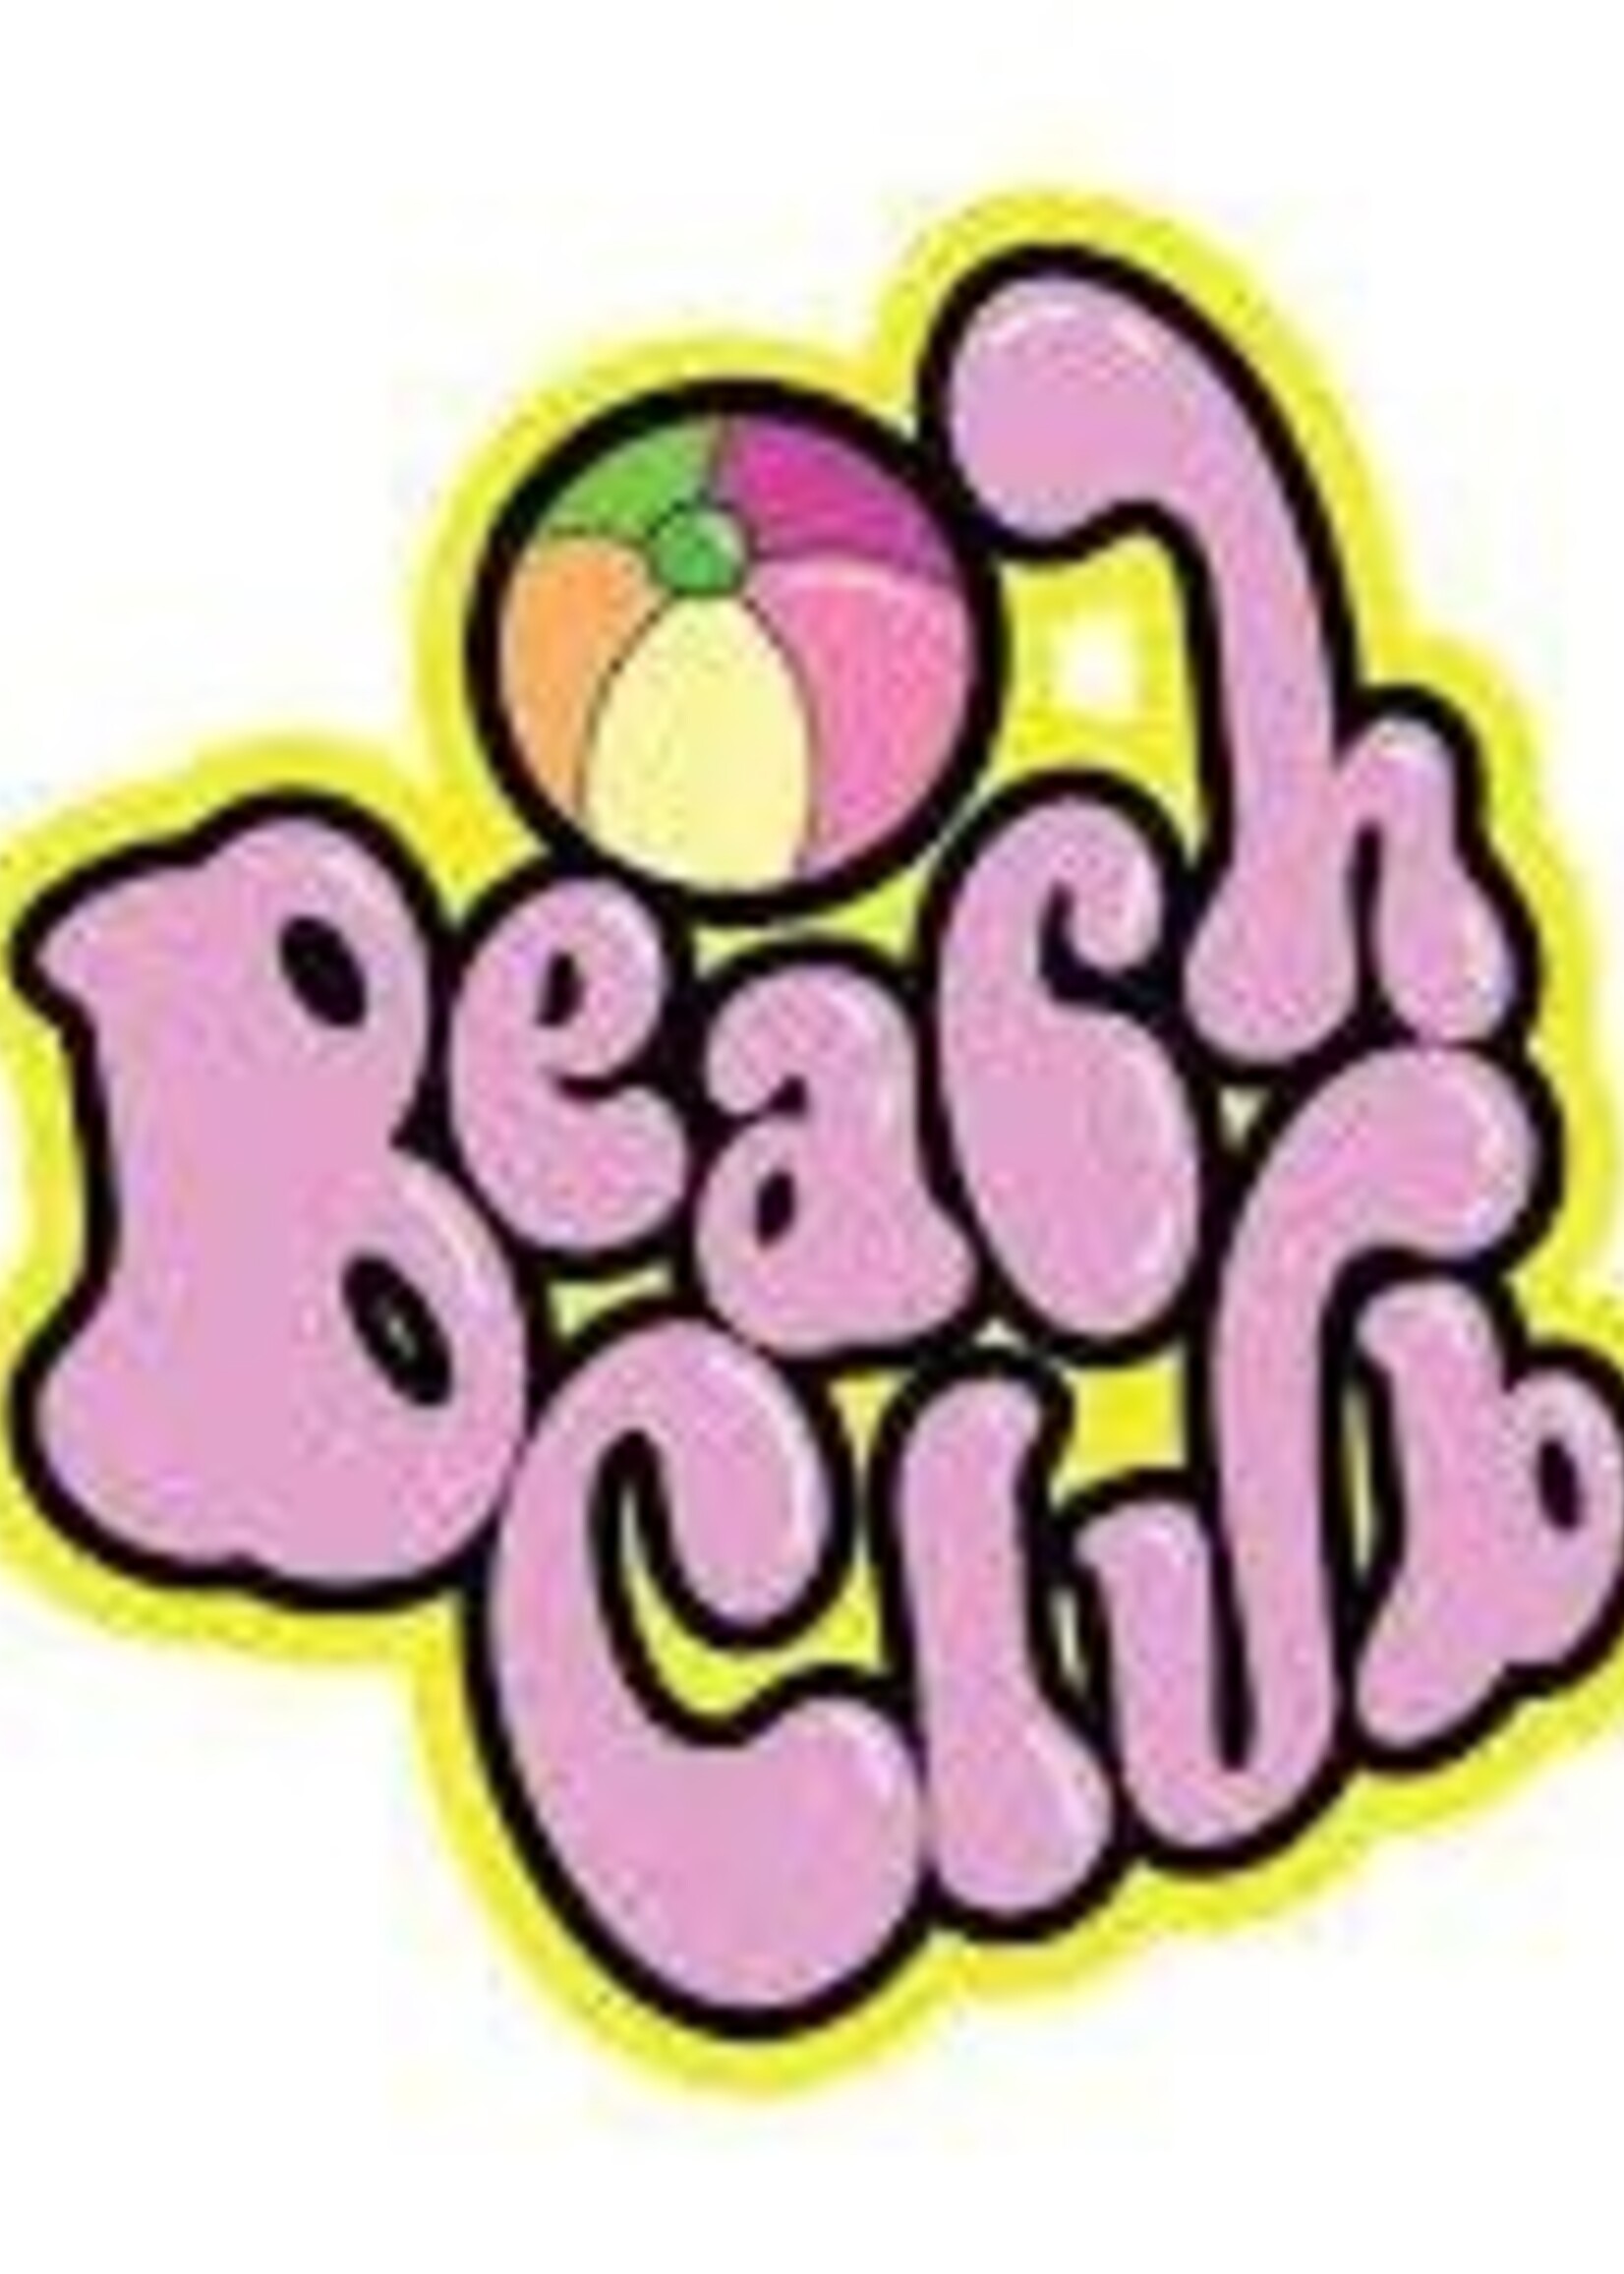 BEACH CLUB VAPORS BEACH CLUB E-LIQUIDS